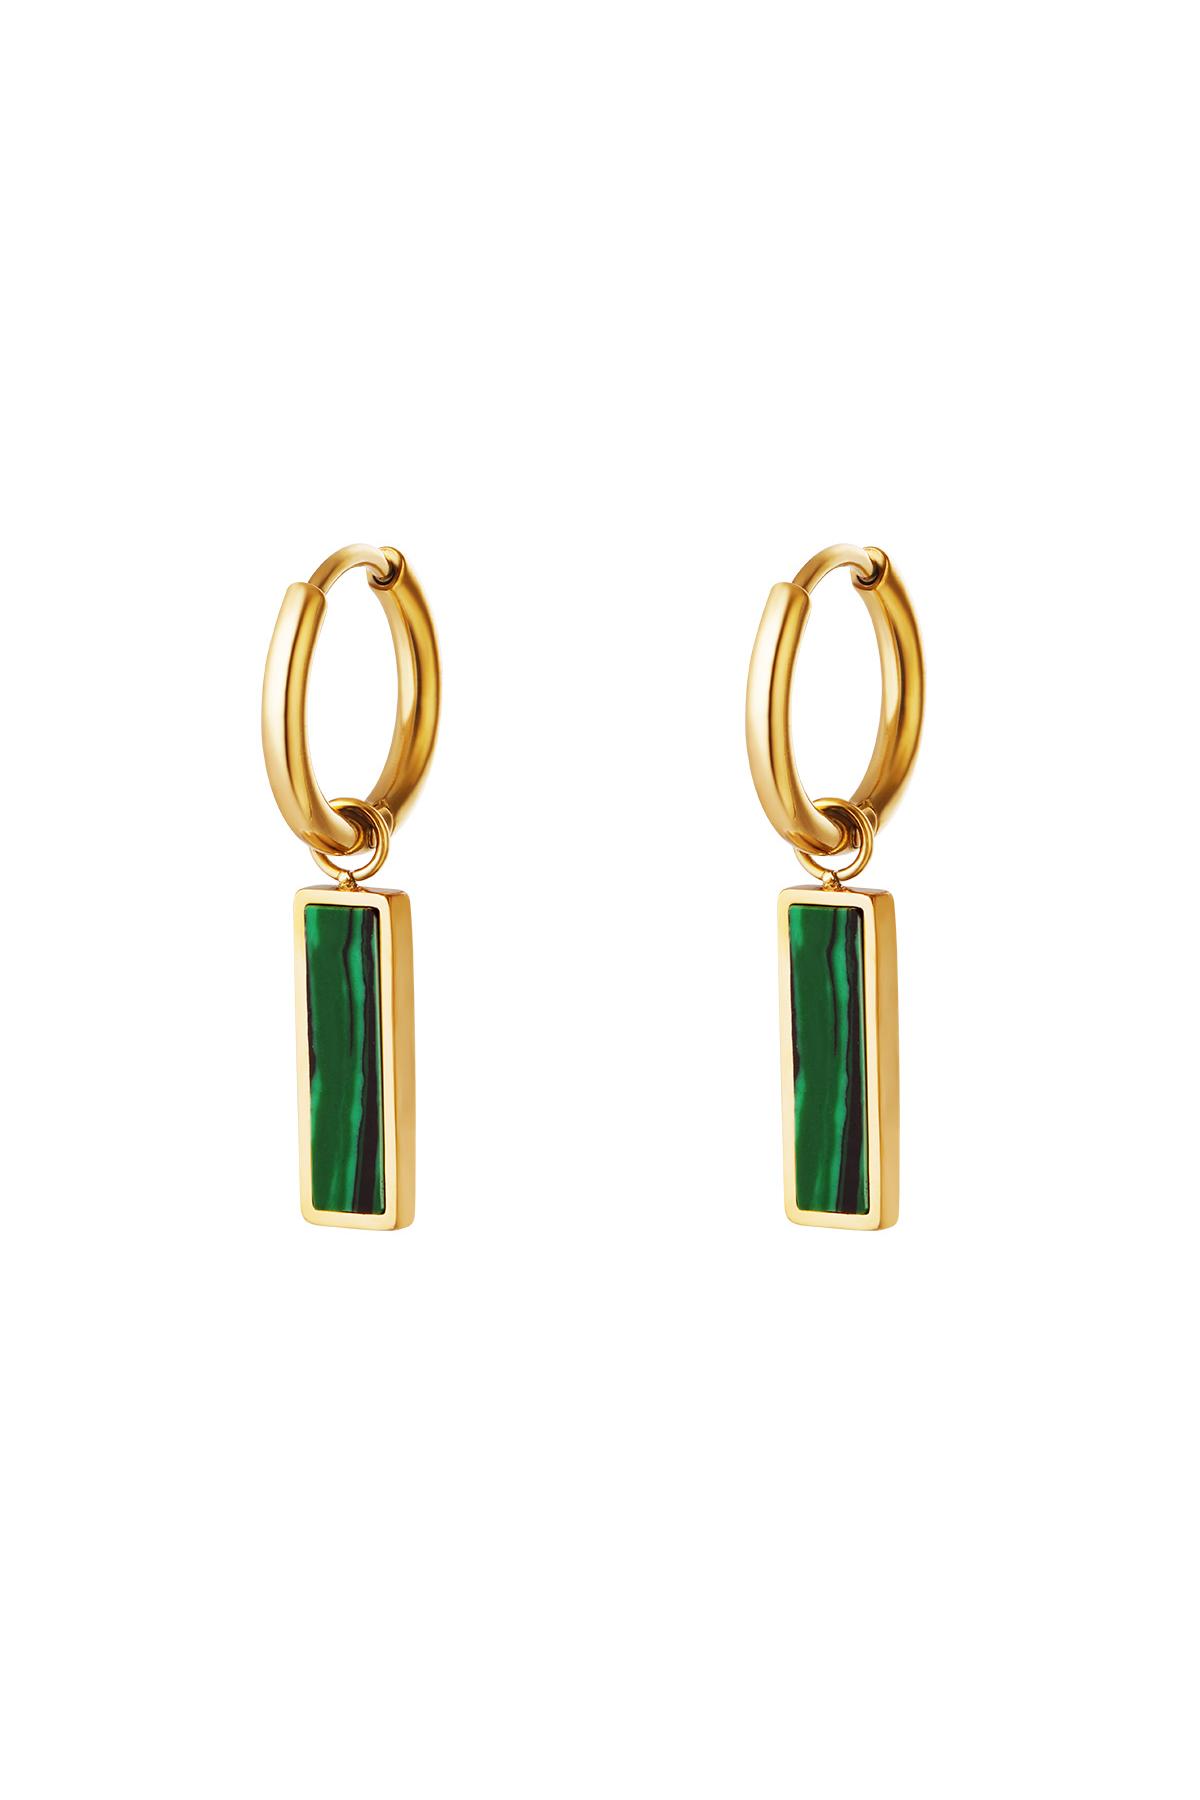 Green bar earrings  Gold Stainless Steel